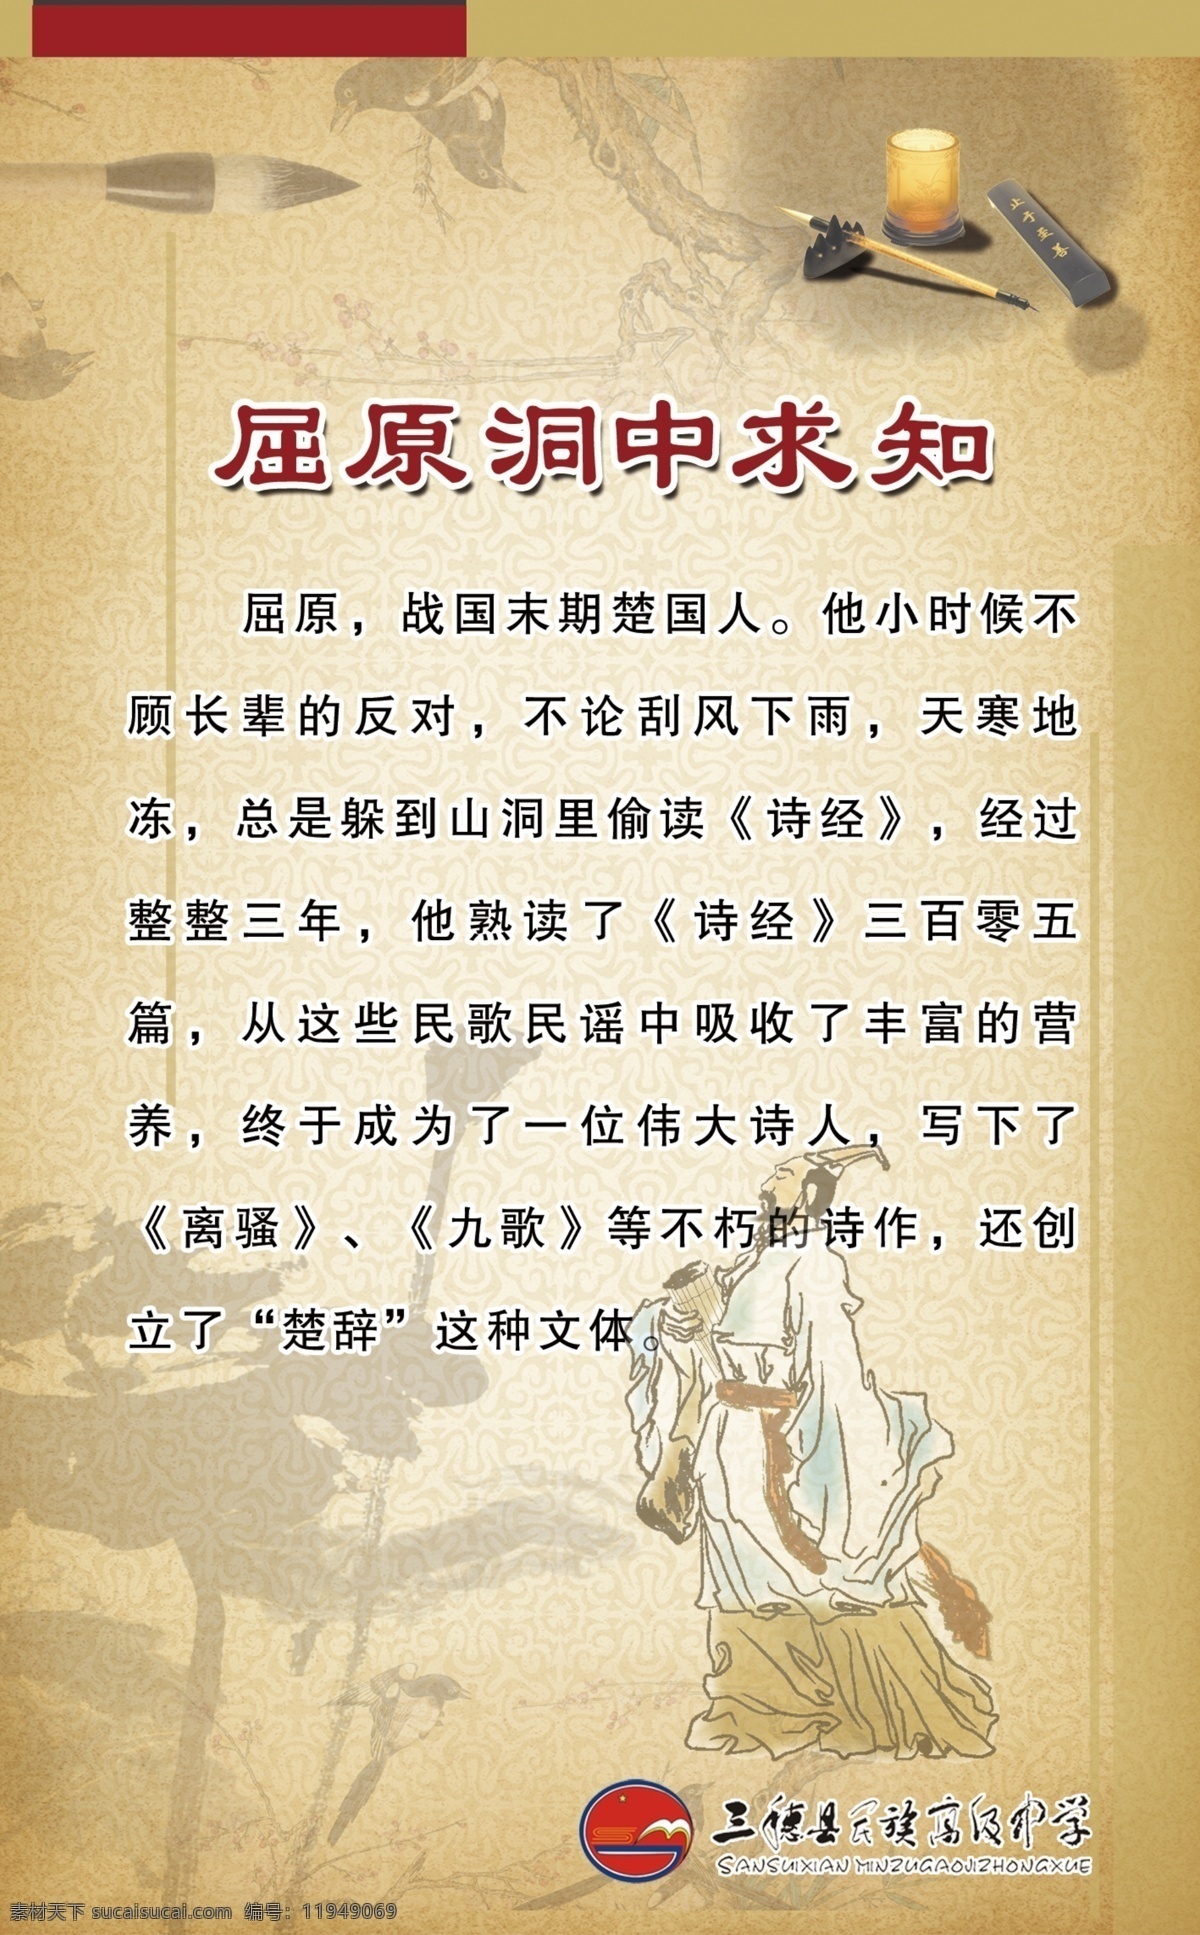 校园文化 中国风 屈原洞中求知 离骚 读书 文化 展板模板 广告设计模板 源文件